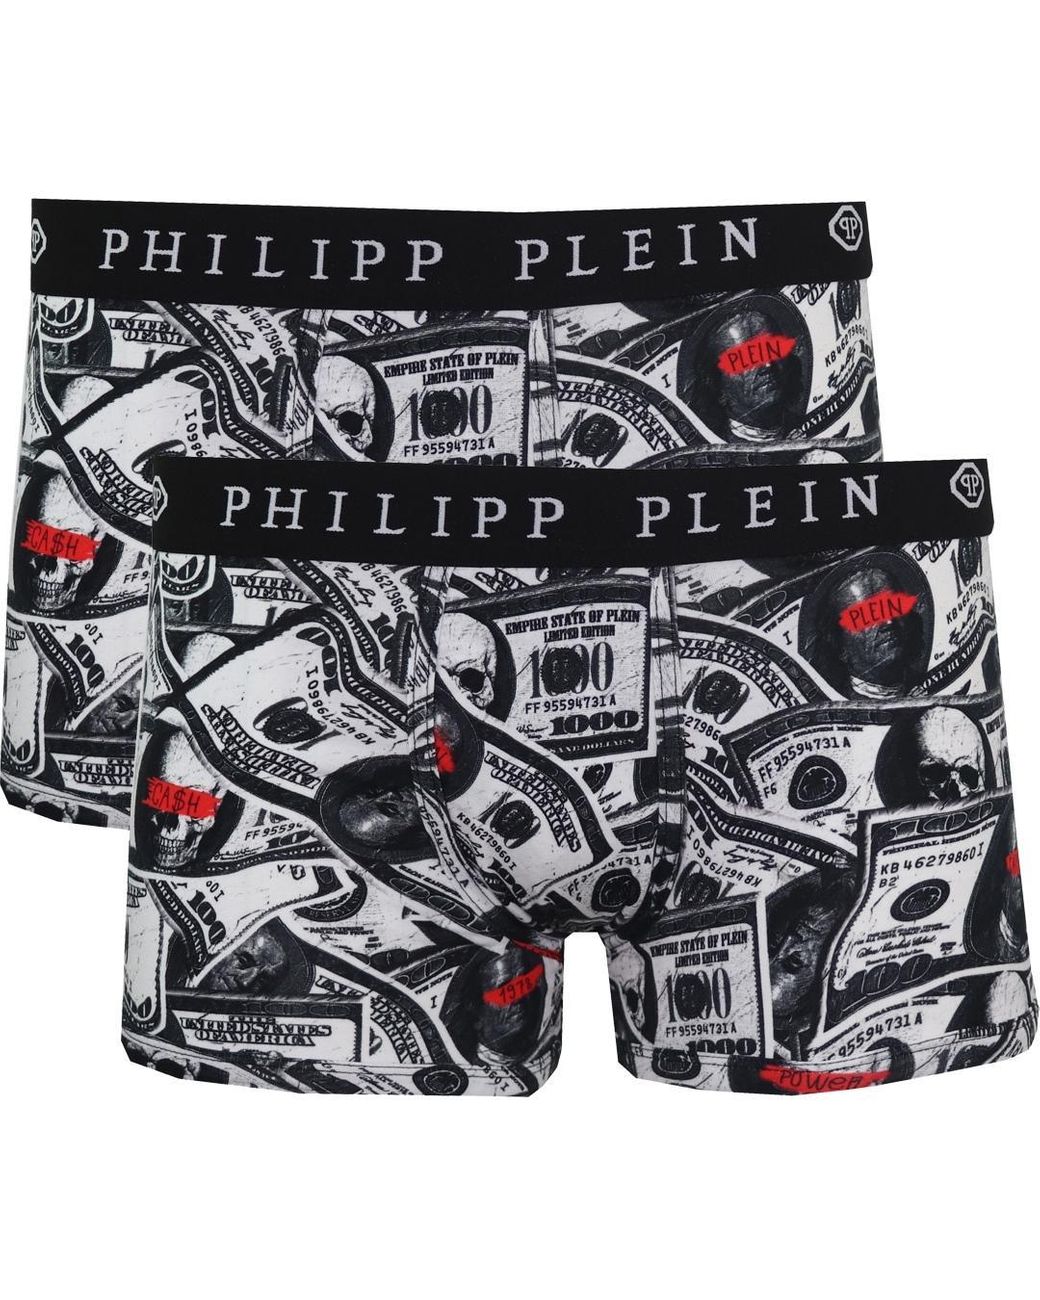 Philipp Plein Dollar Logo Black Boxer Shorts Two Pack for Men | Lyst